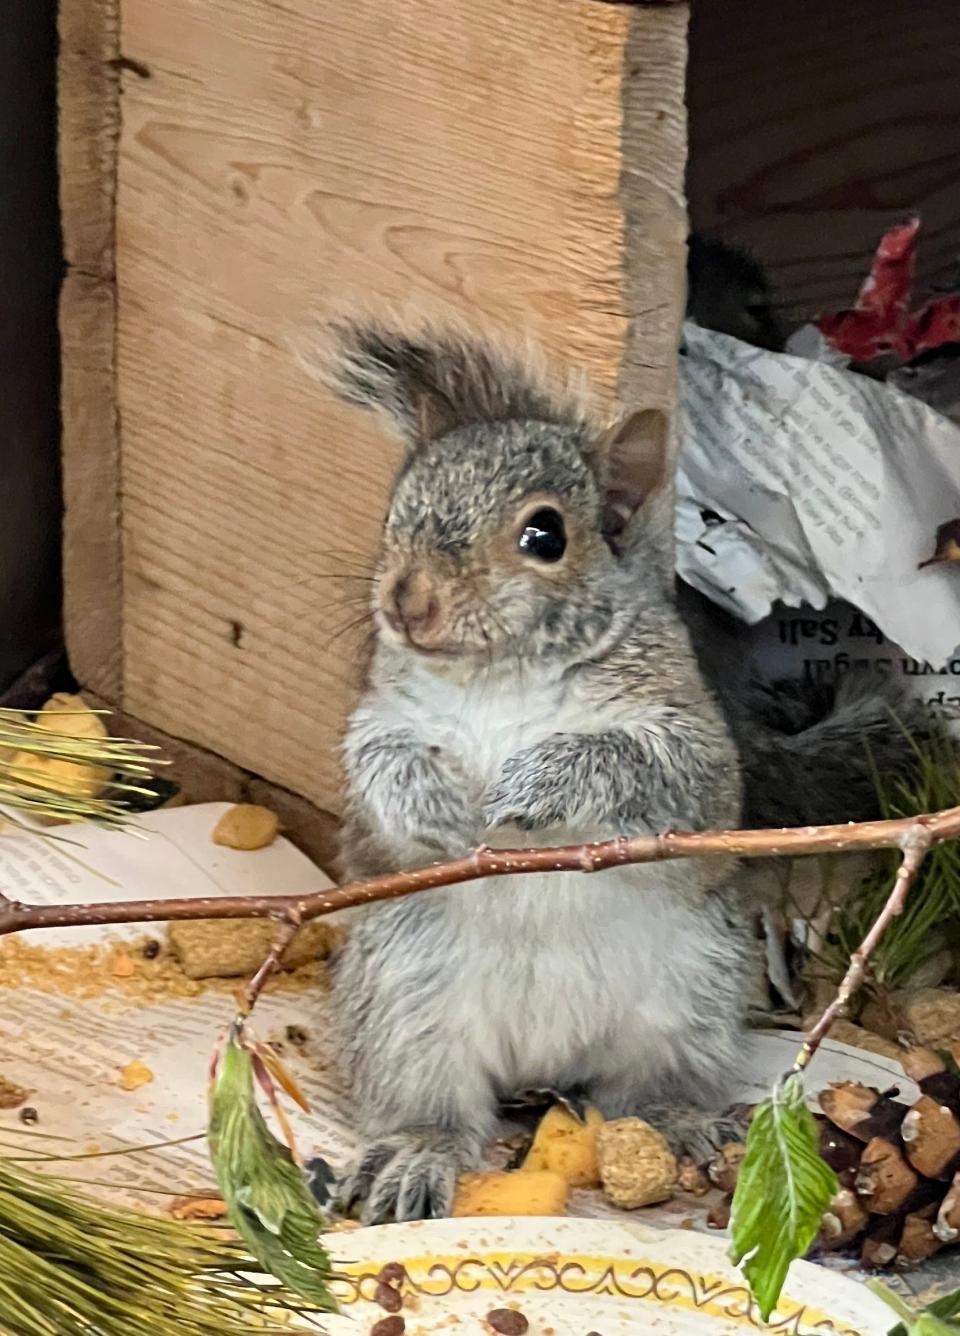 A gray squirrel baby.